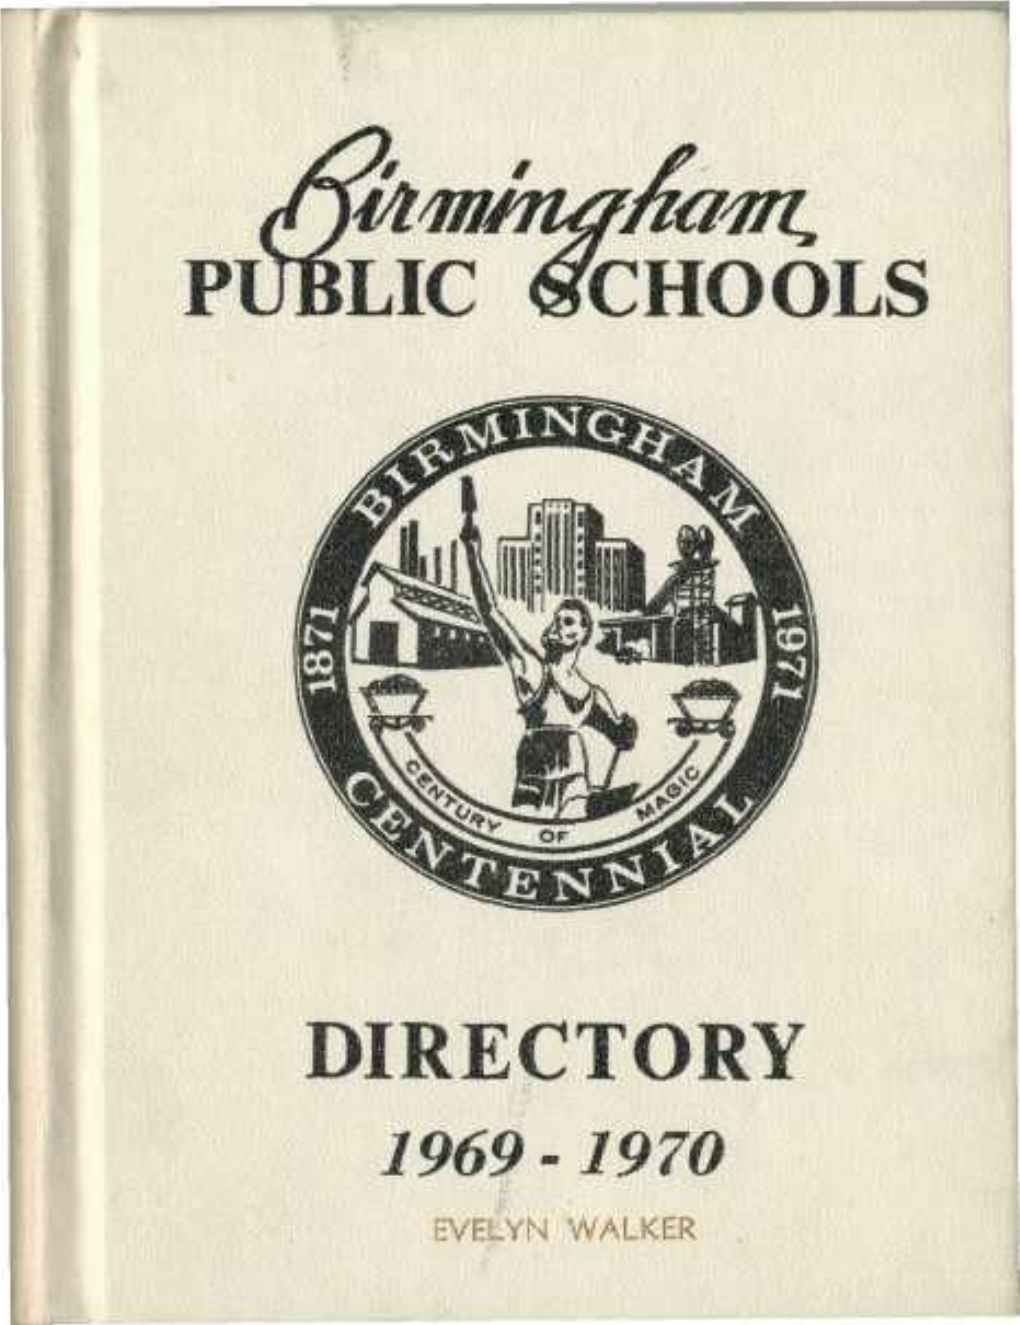 Public Schools Directory